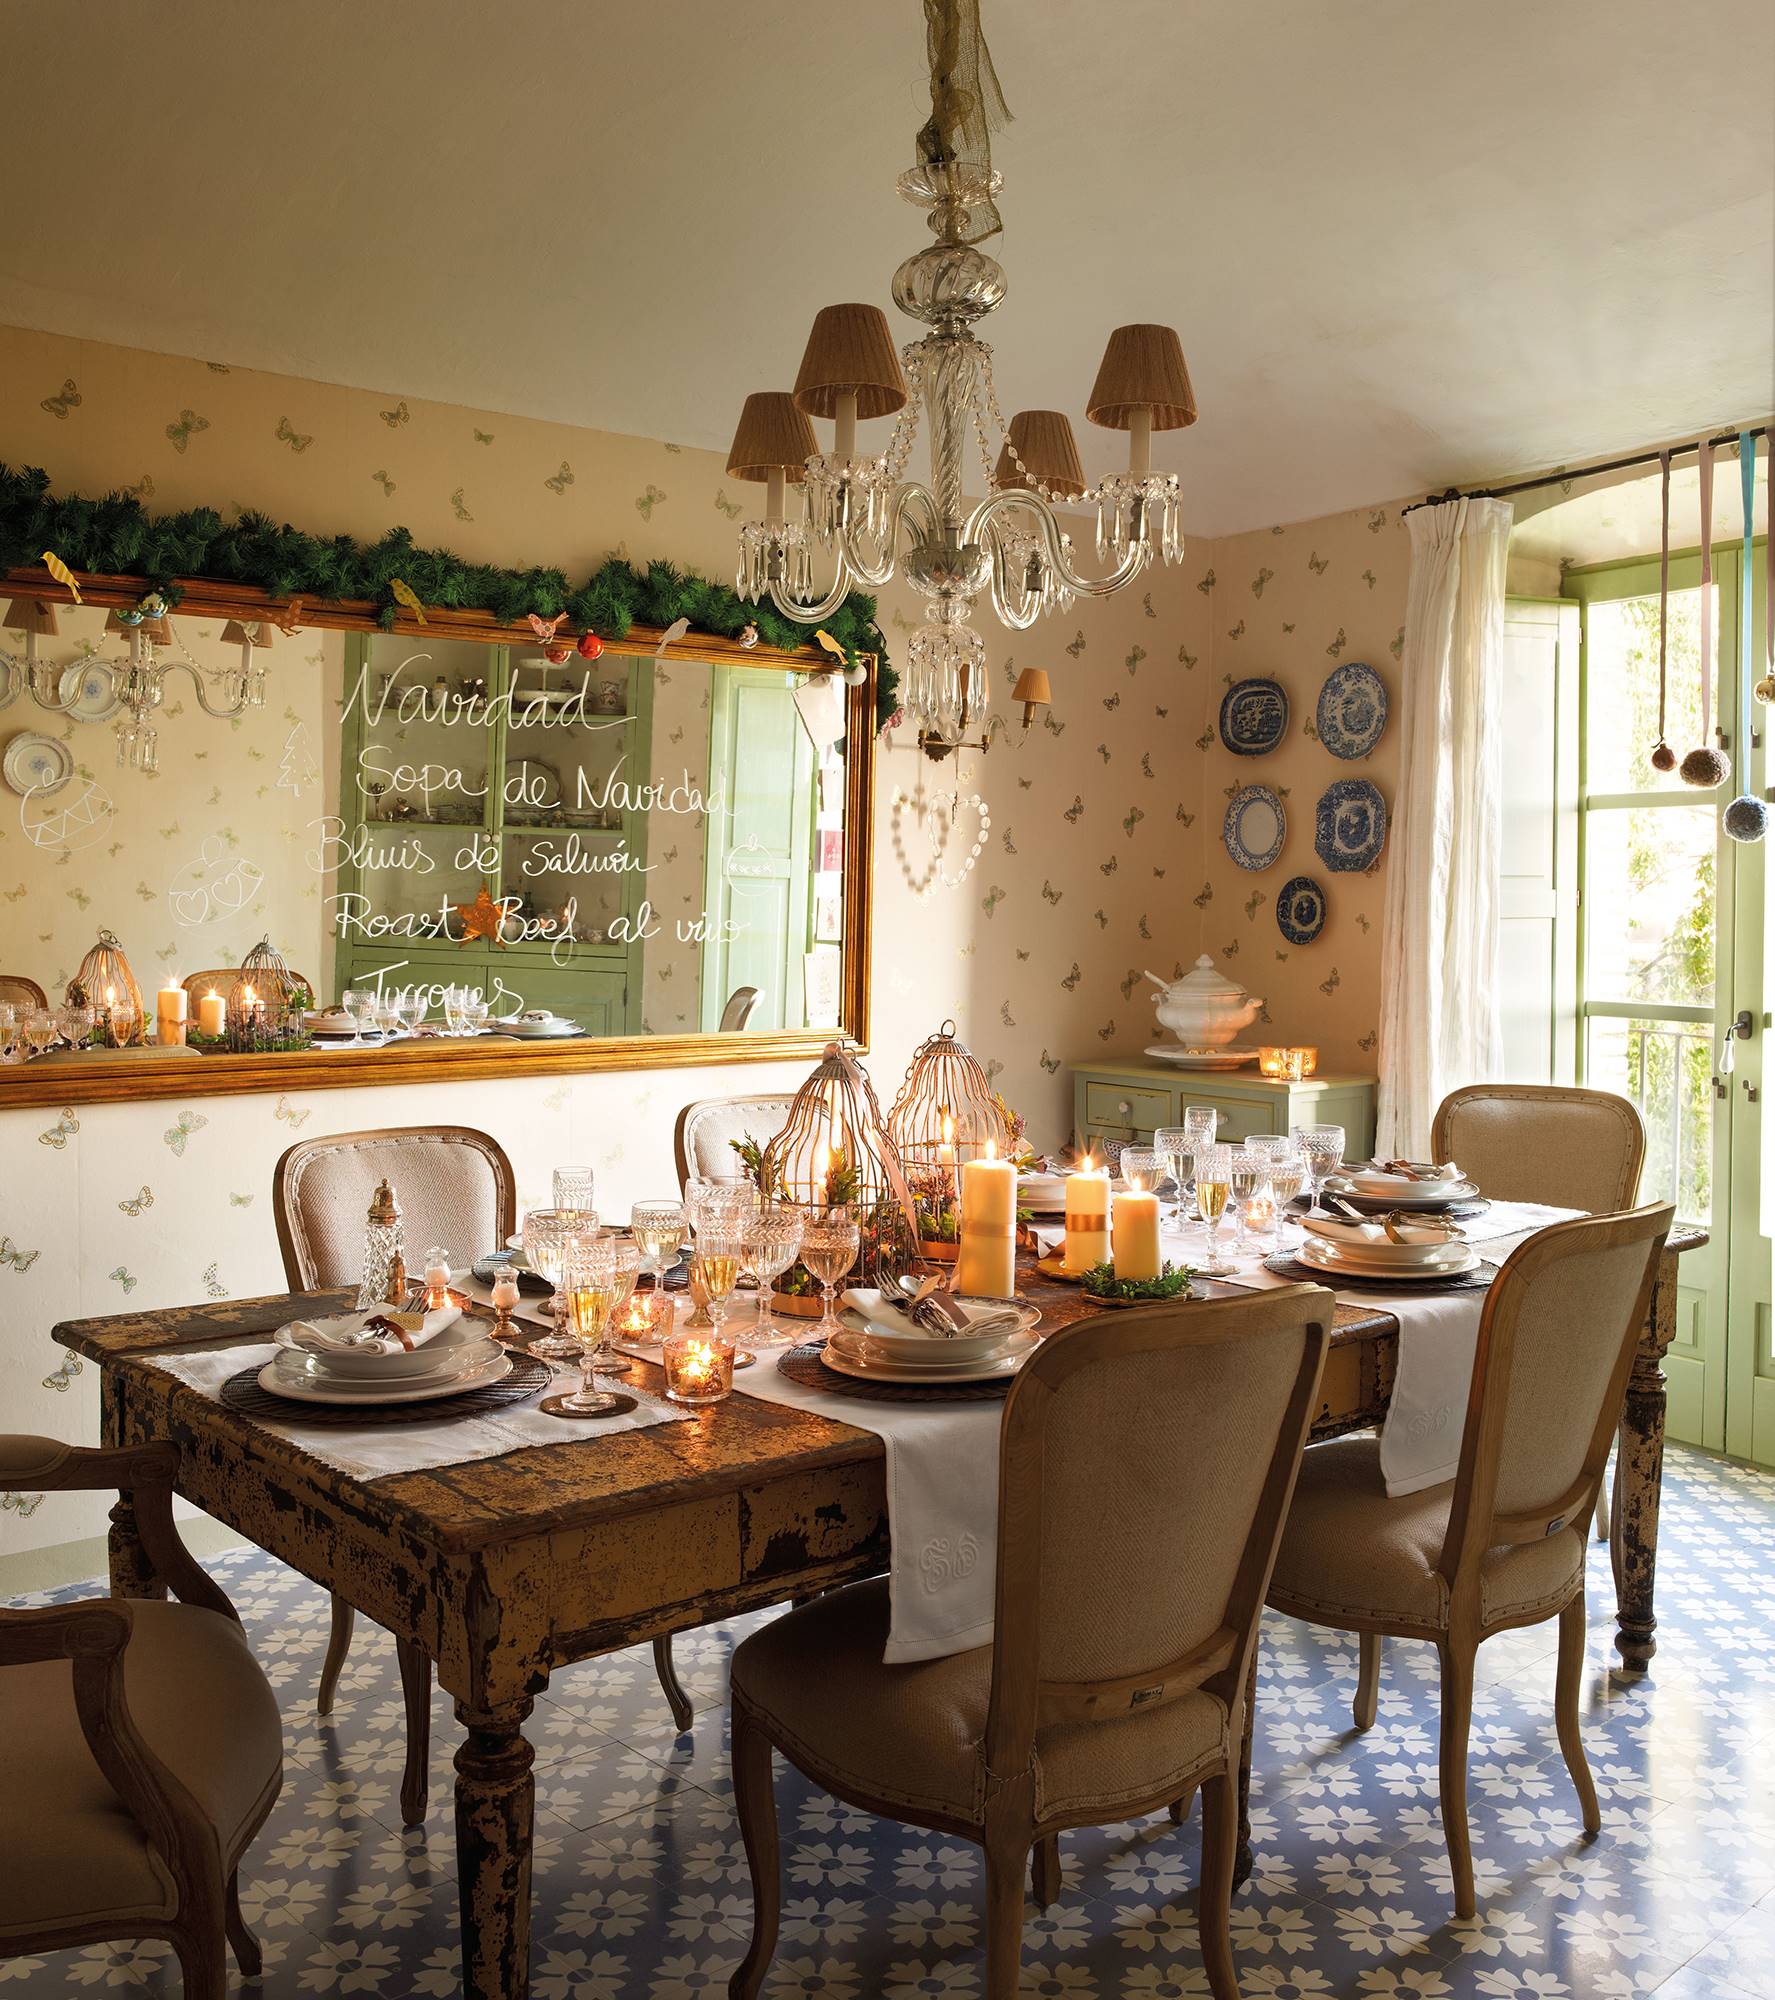 Comedor rústico decorado por Navidad con centro de mesa.